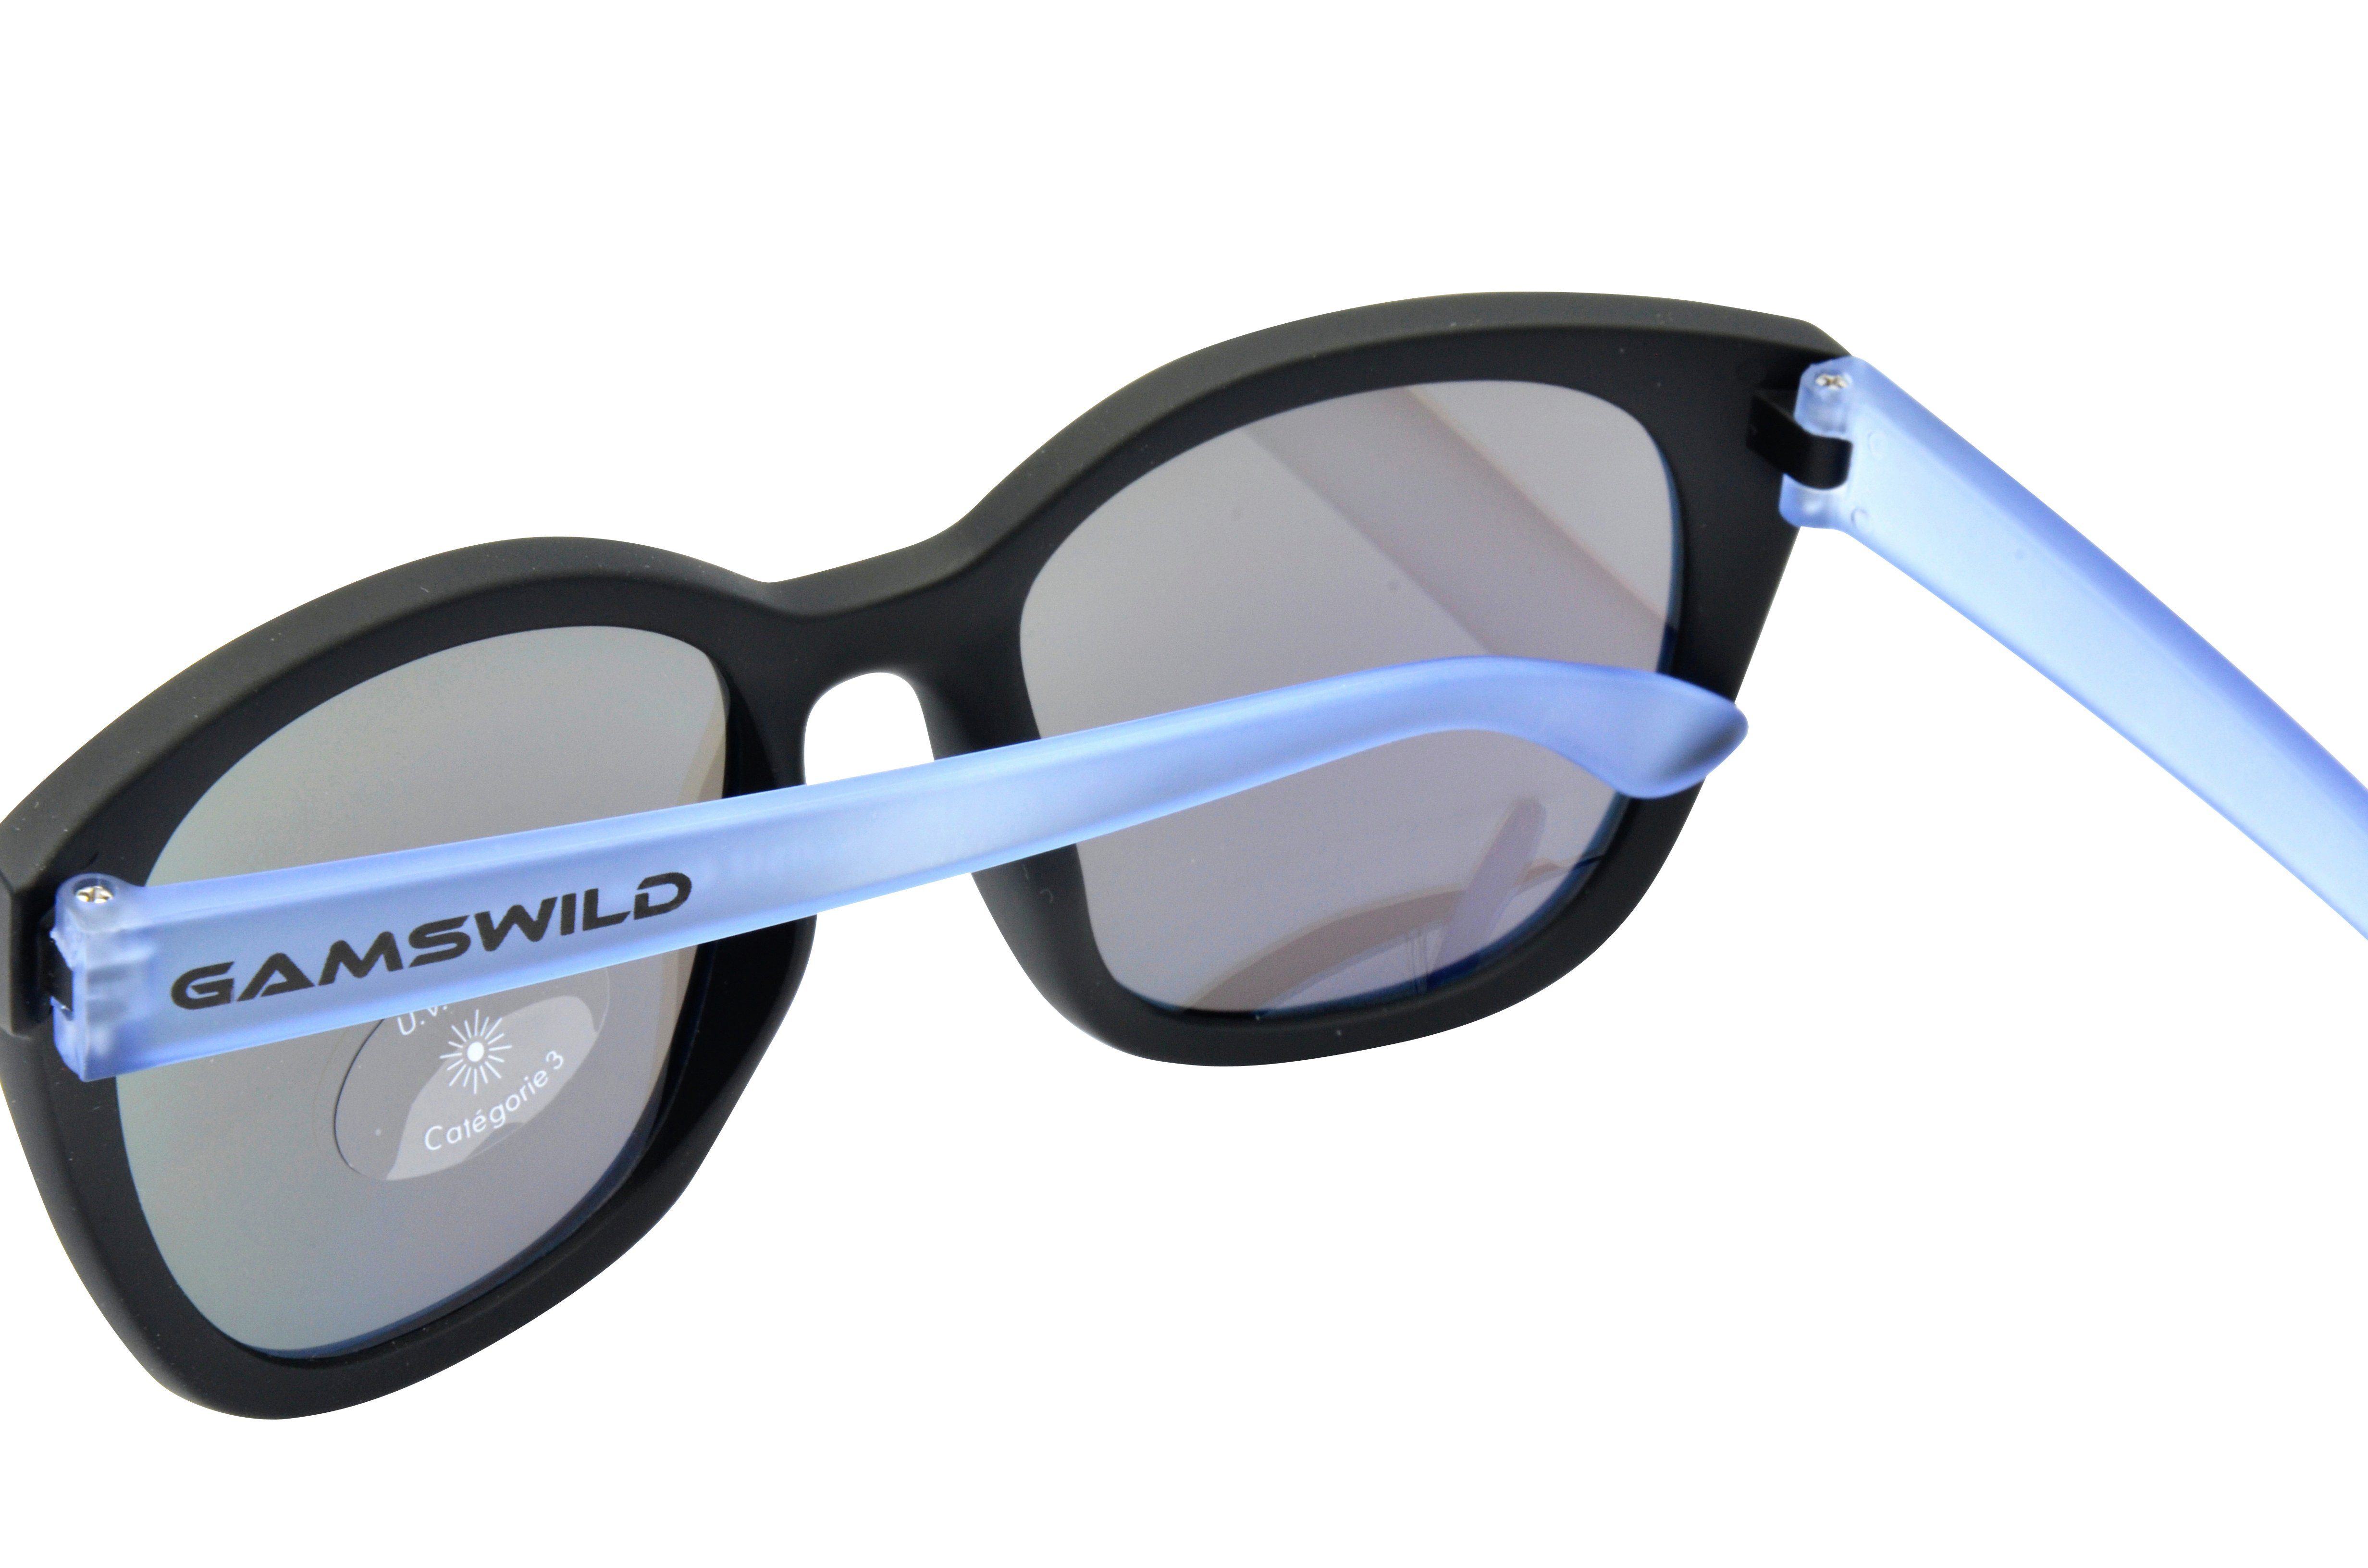 GAMSKIDS grau Rahmen Damen Kinderbrille Unisex, WJ7517 pink, Jugendbrille Mädchen Sonnenbrille Jahre Gamswild halbtransparenter kids 8-18 blau,